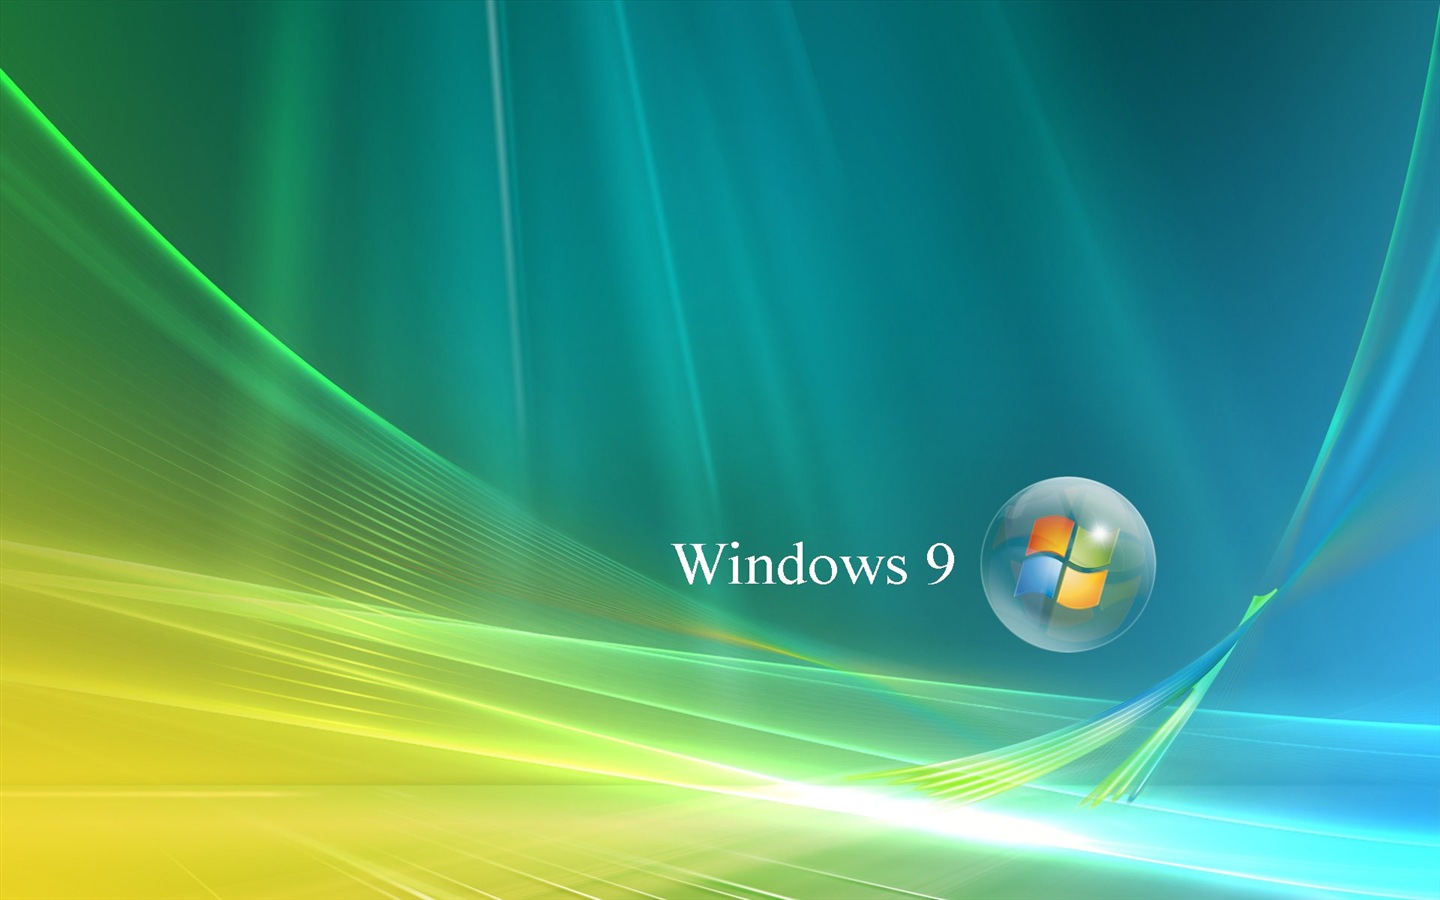 微软 Windows 9 系统主题 高清壁纸20 - 1440x900